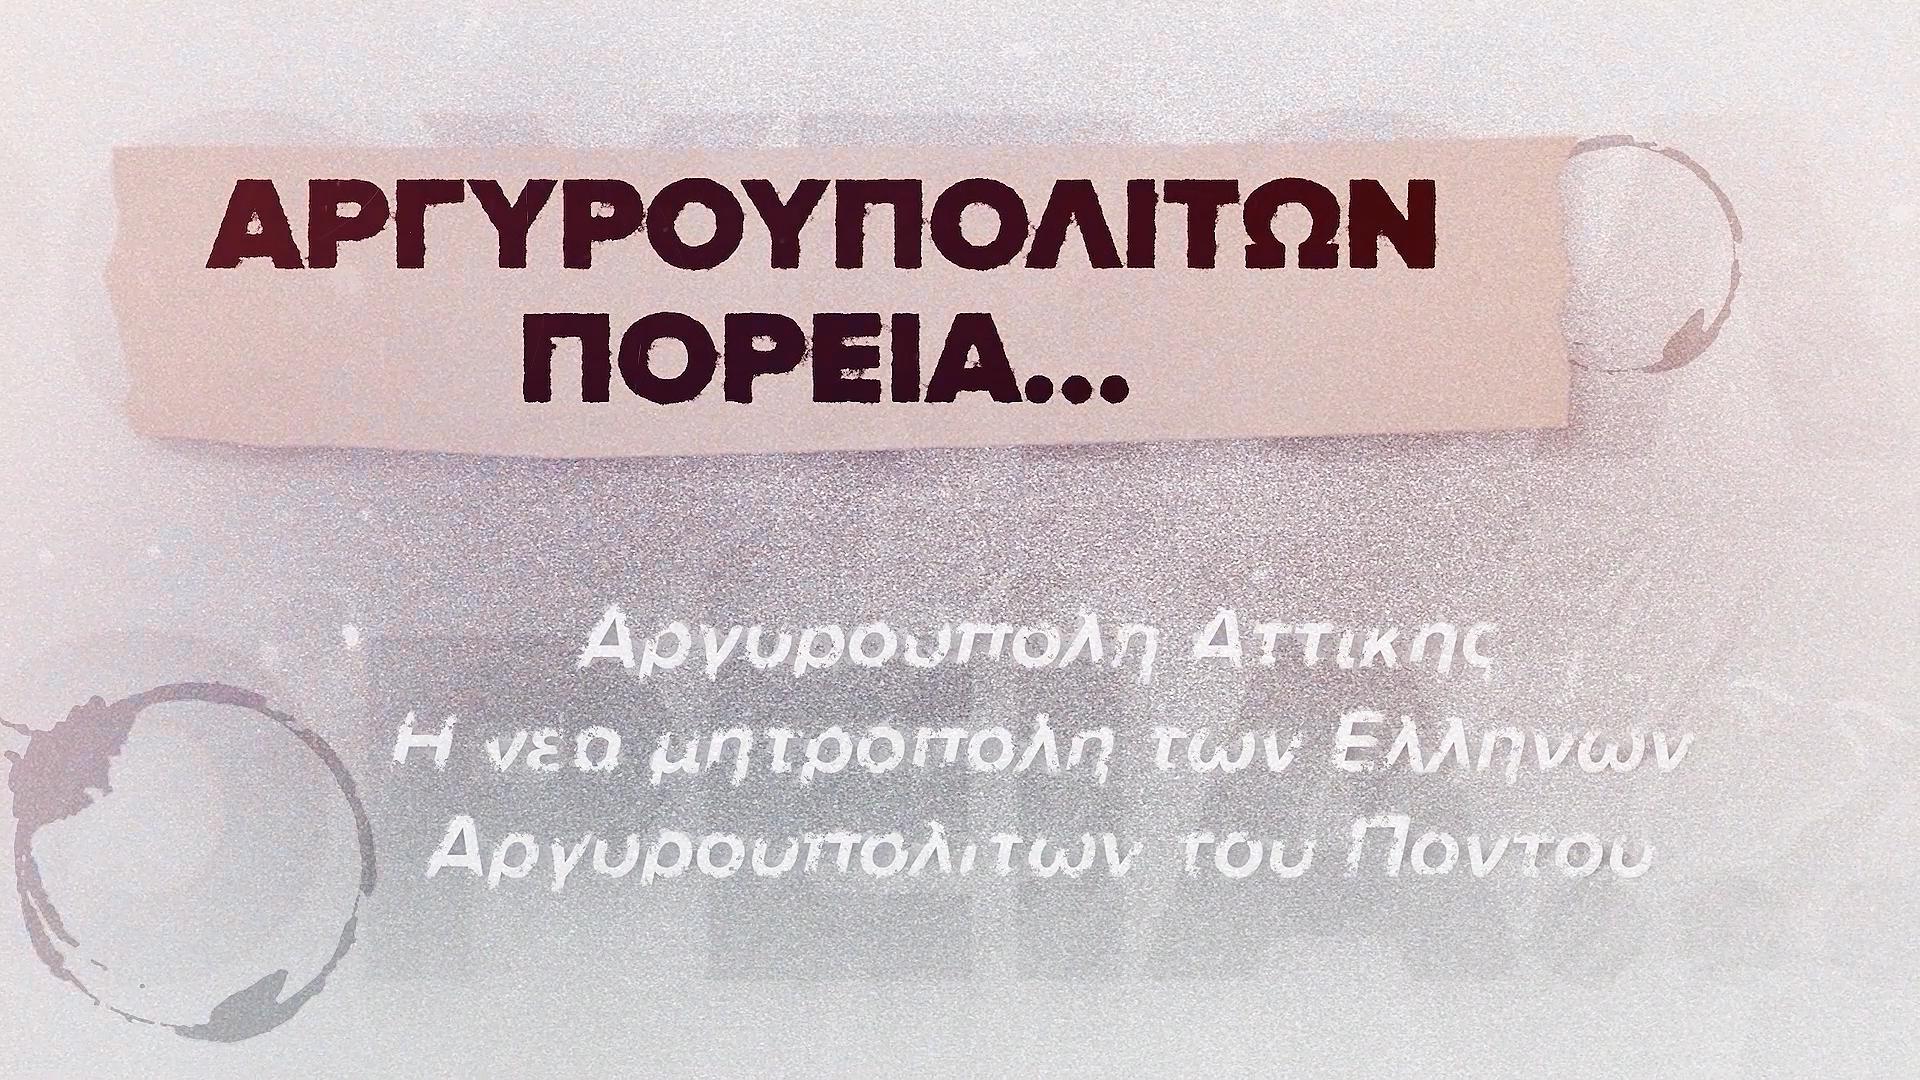 Αργυρουπολιτών πορεία… Ένα ντοκιμαντέρ για την ιστορία της Αργυρούπολης Αττικής